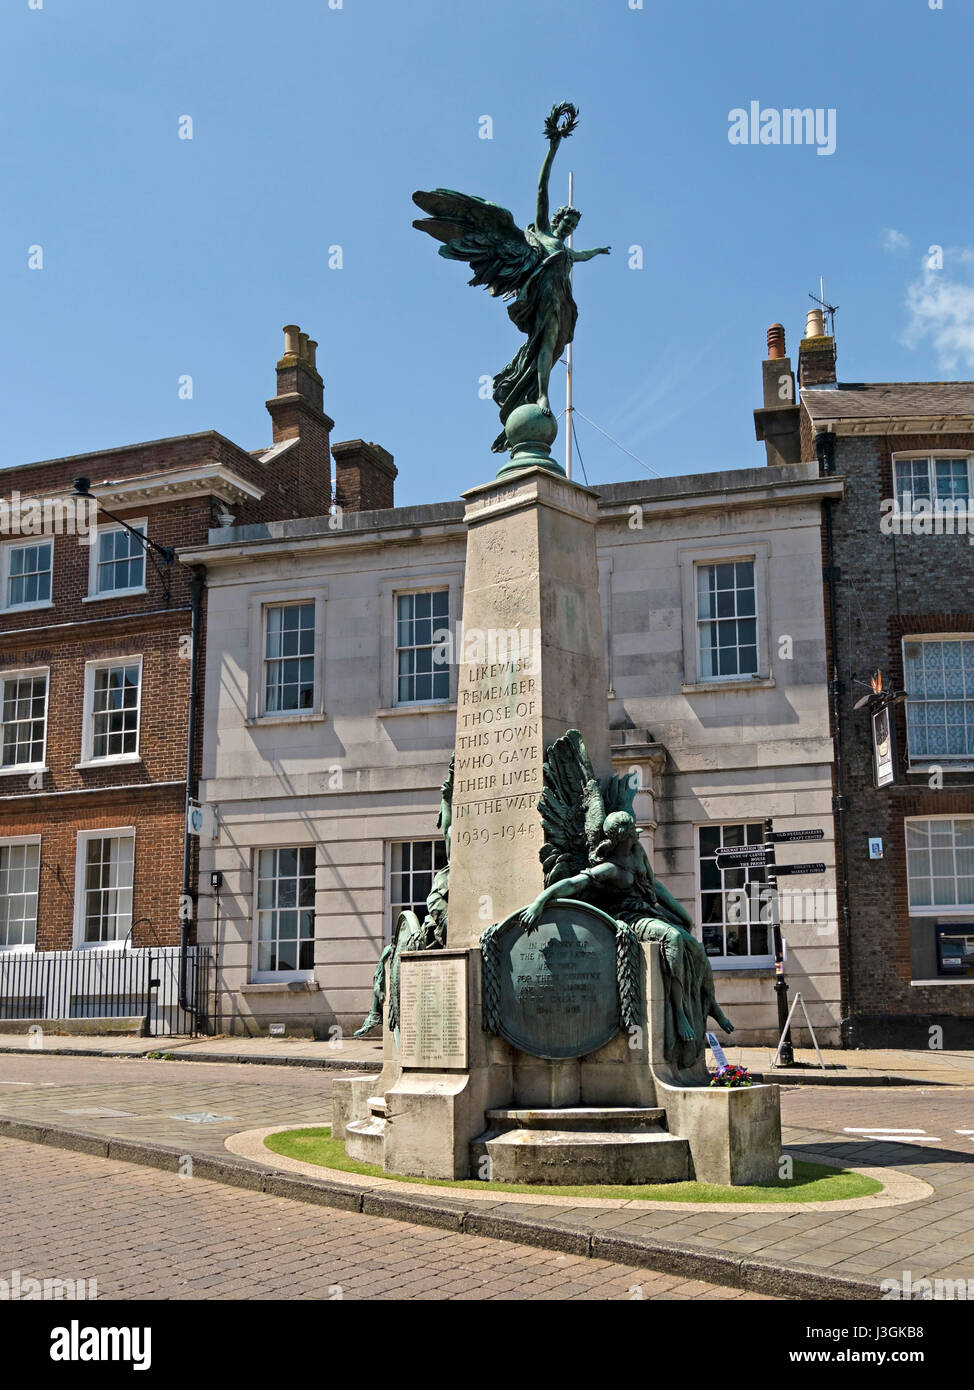 Lewes première guerre mondiale monument mémorial par Vernon Mars, avec statues de la liberté, la paix et la victoire, Lewes, High Street, East Sussex, England, UK Banque D'Images